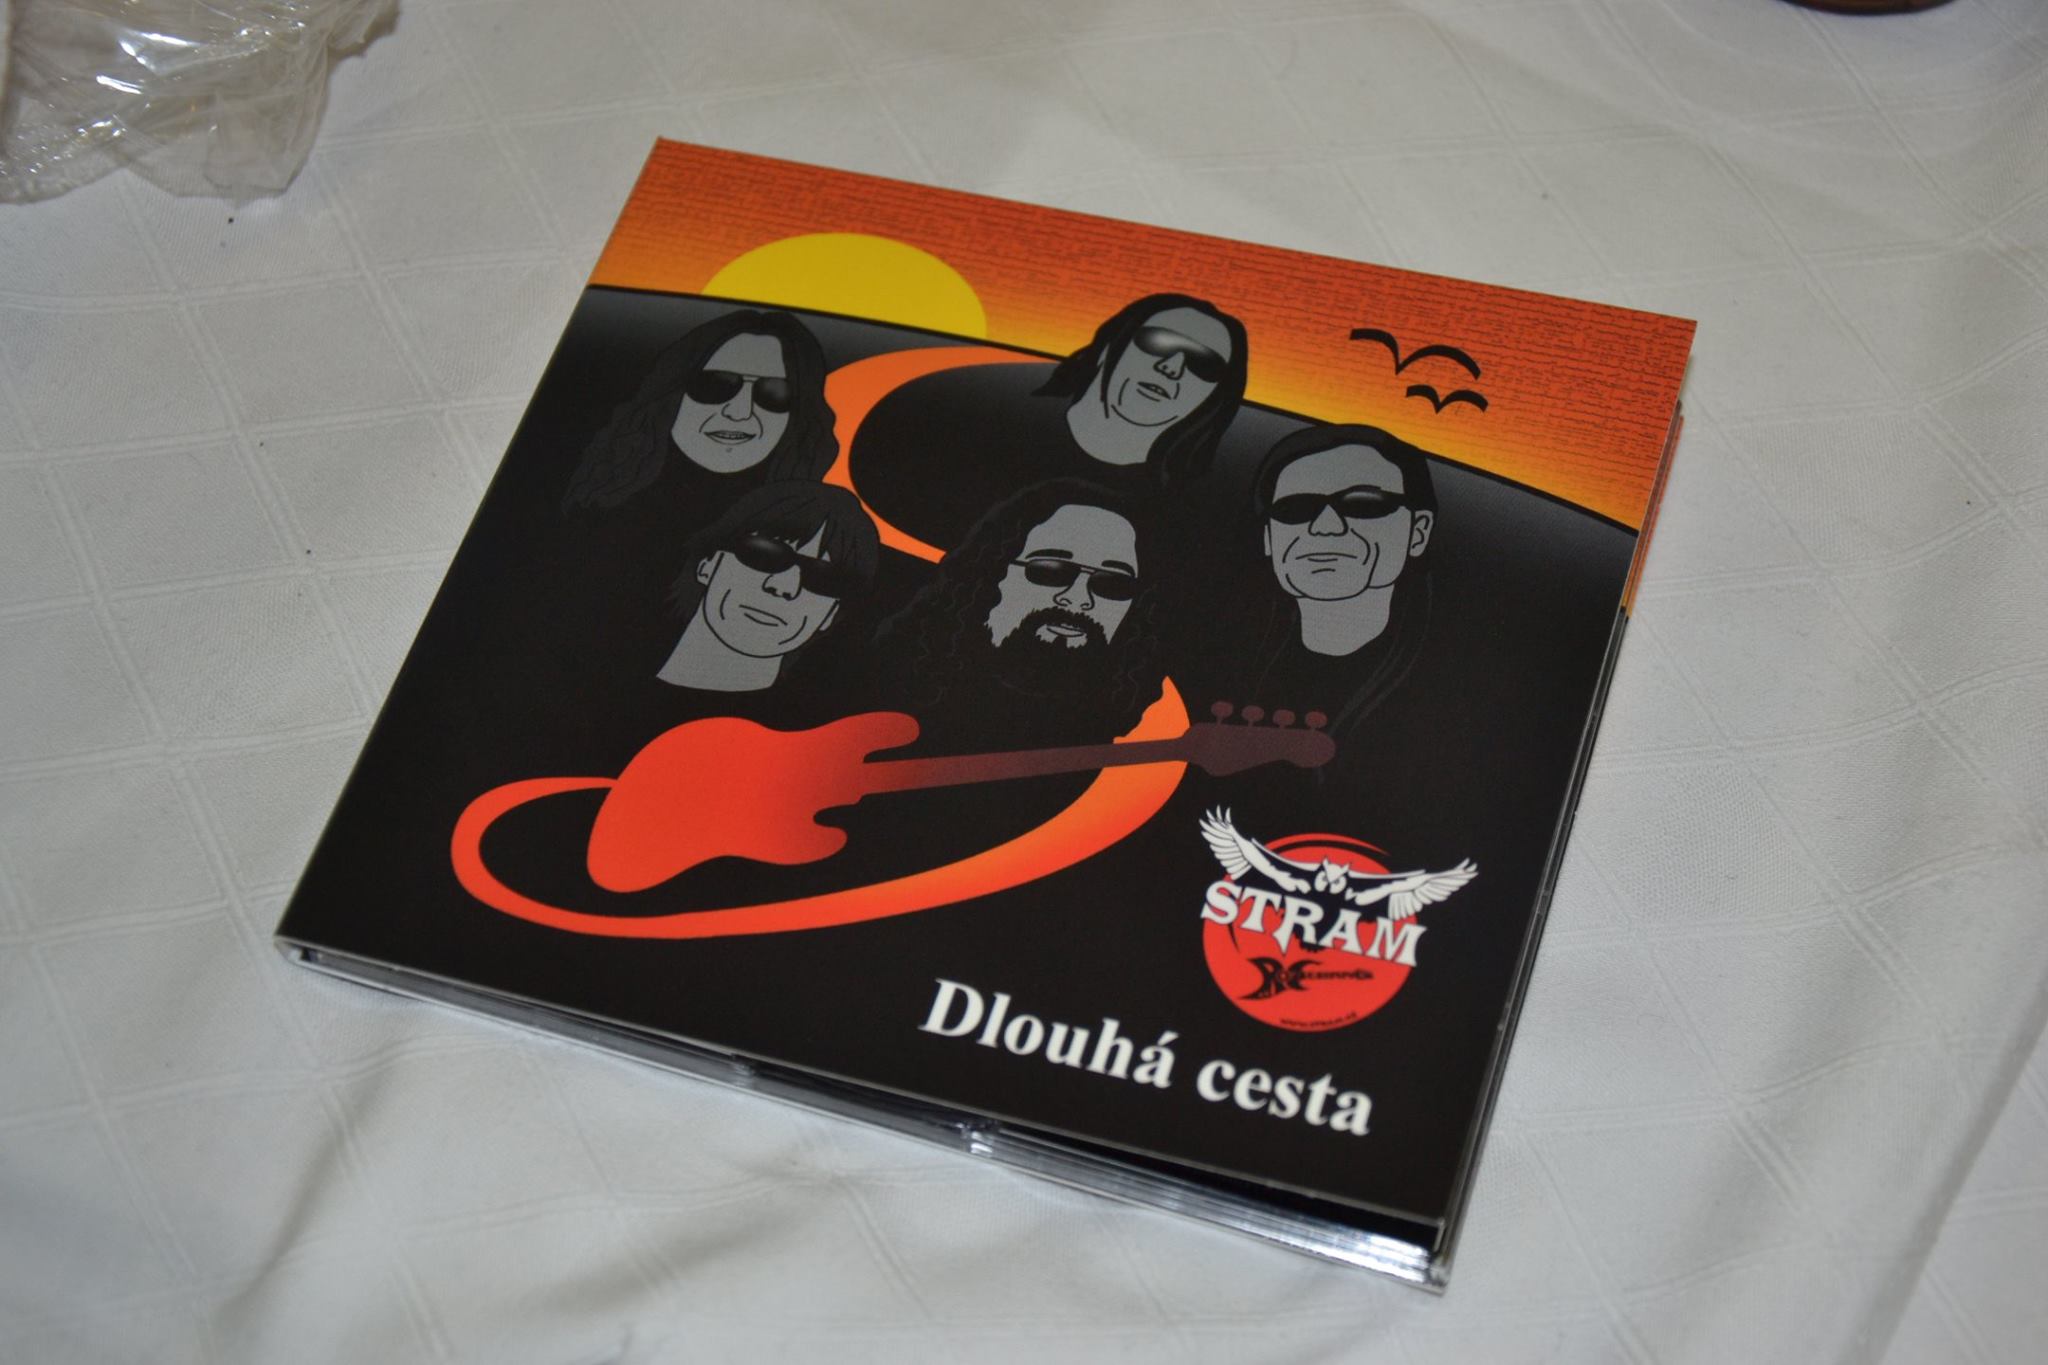 Na obale CD, ktorý je oranžovo-čierny, sú portréty piatich členov skupiny, gitara a logo skupiny.  